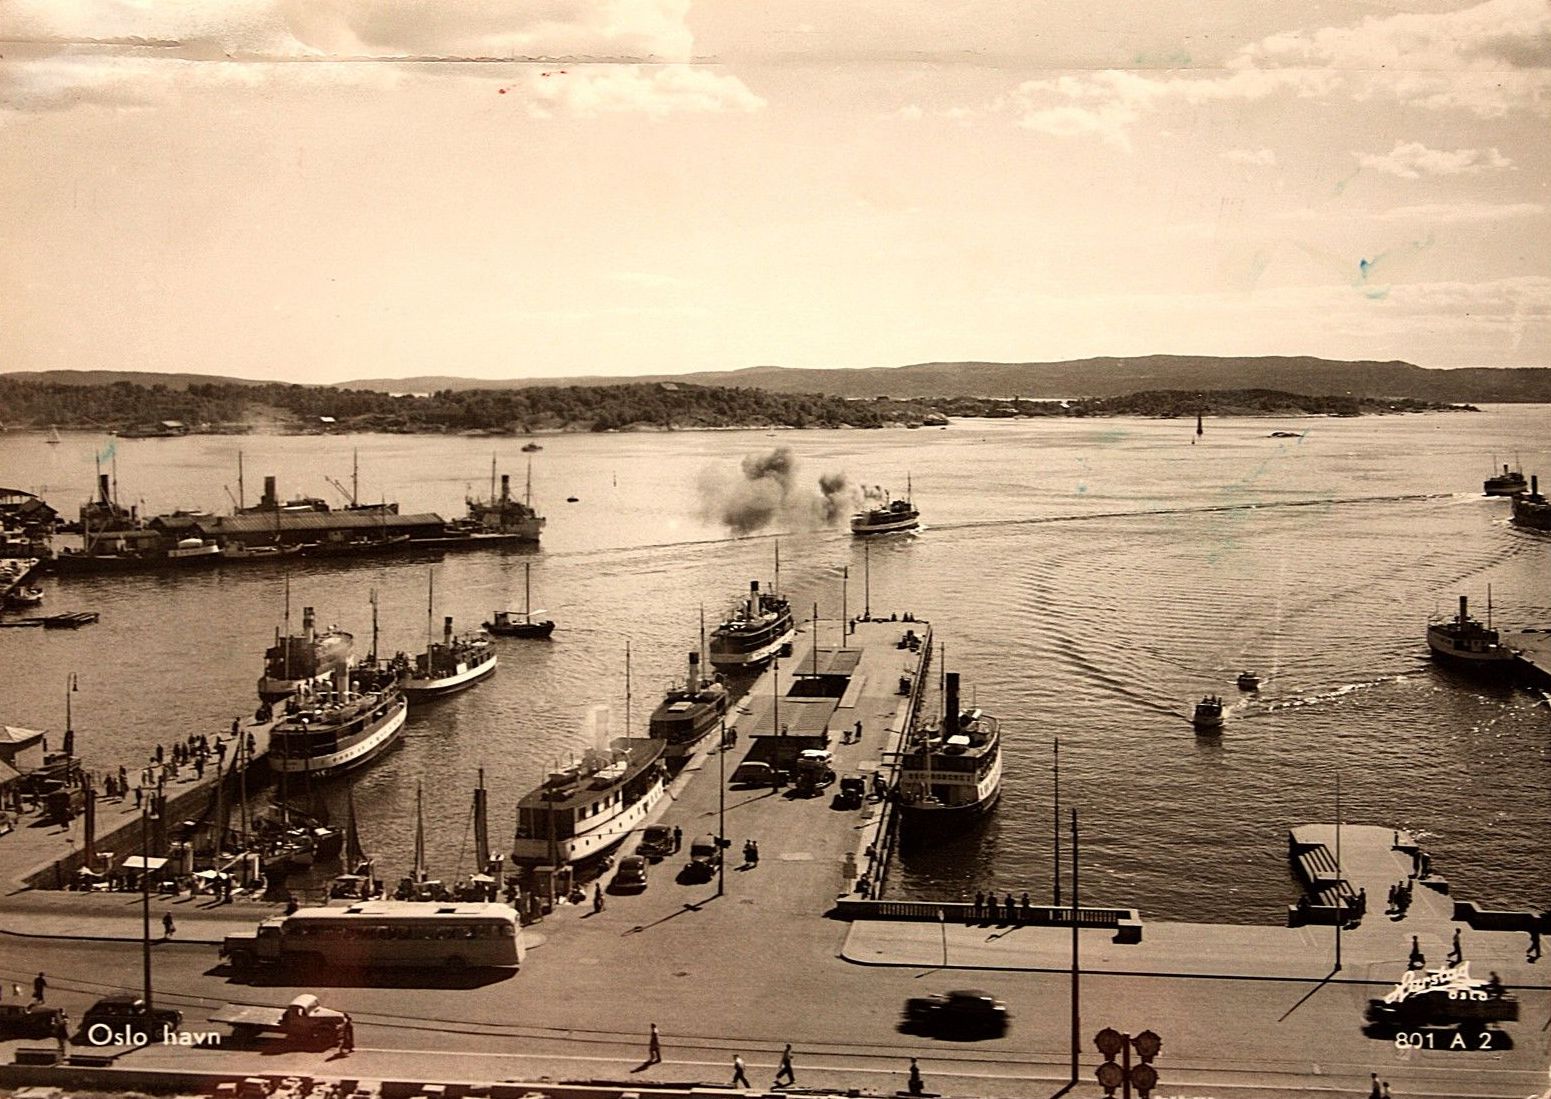 Nesoddbåtene Oslo Havn , utg Harstad 801 A 2 , postgått 1957.jpg